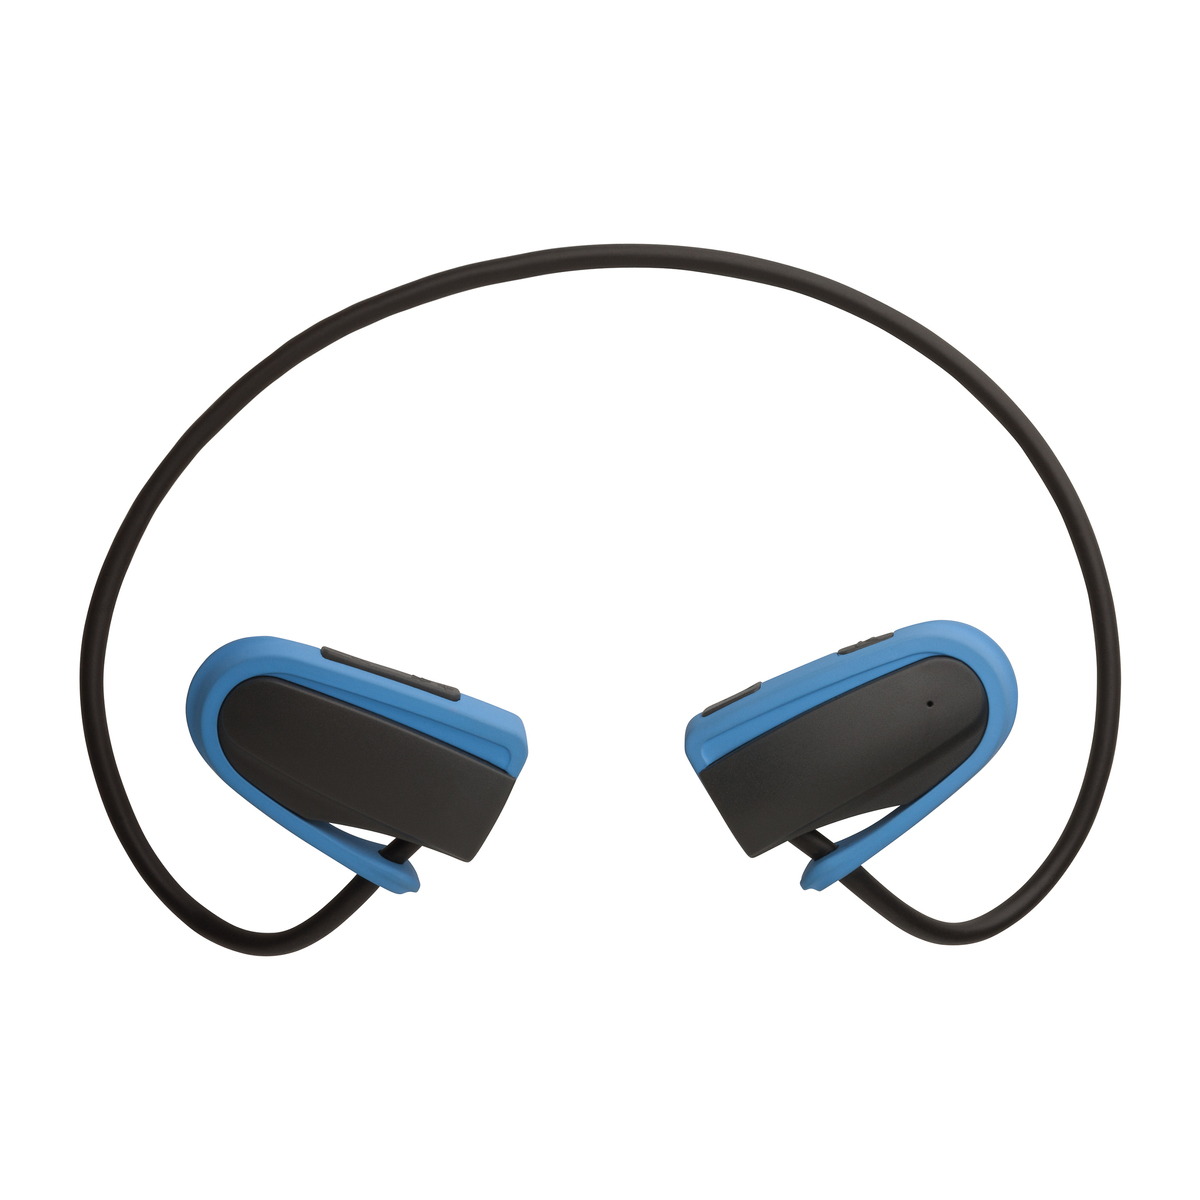 LM Kopfhörer mit Bluetooth® Technologie REFLECTS-BIDDEFORD BLACK LIGHT BLUE schwarz/hellblau